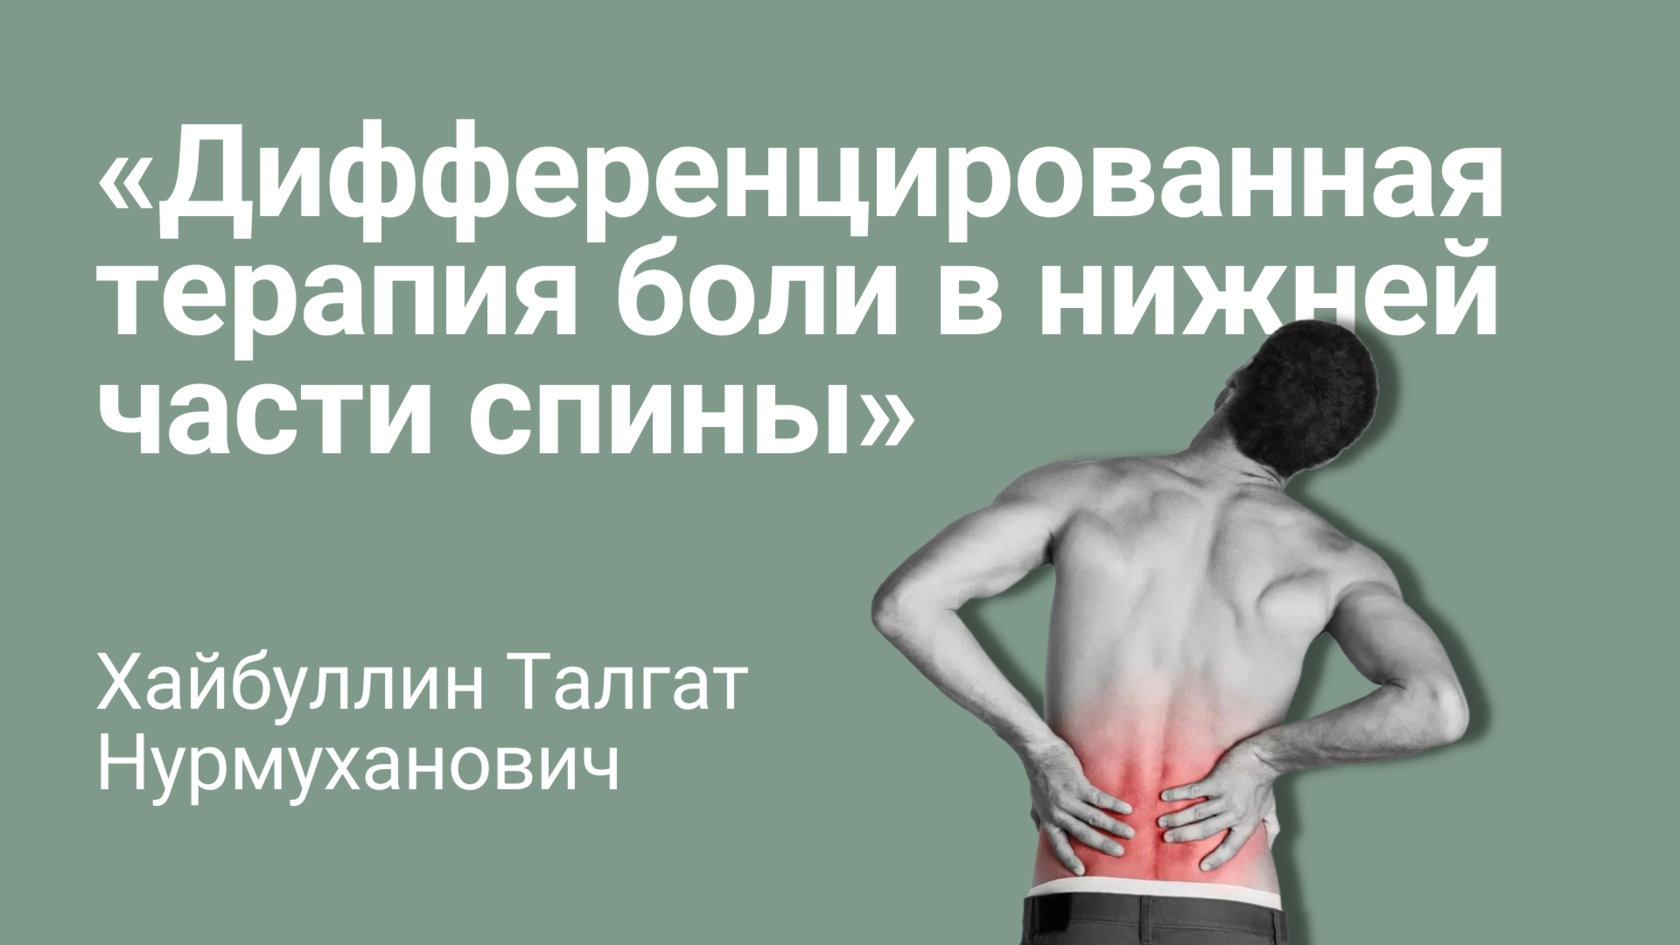 Боль в нижней части спины. Болит нижняя часть спины. Болит спина в нижней части позвоночника. Острая боль в спине терапия.